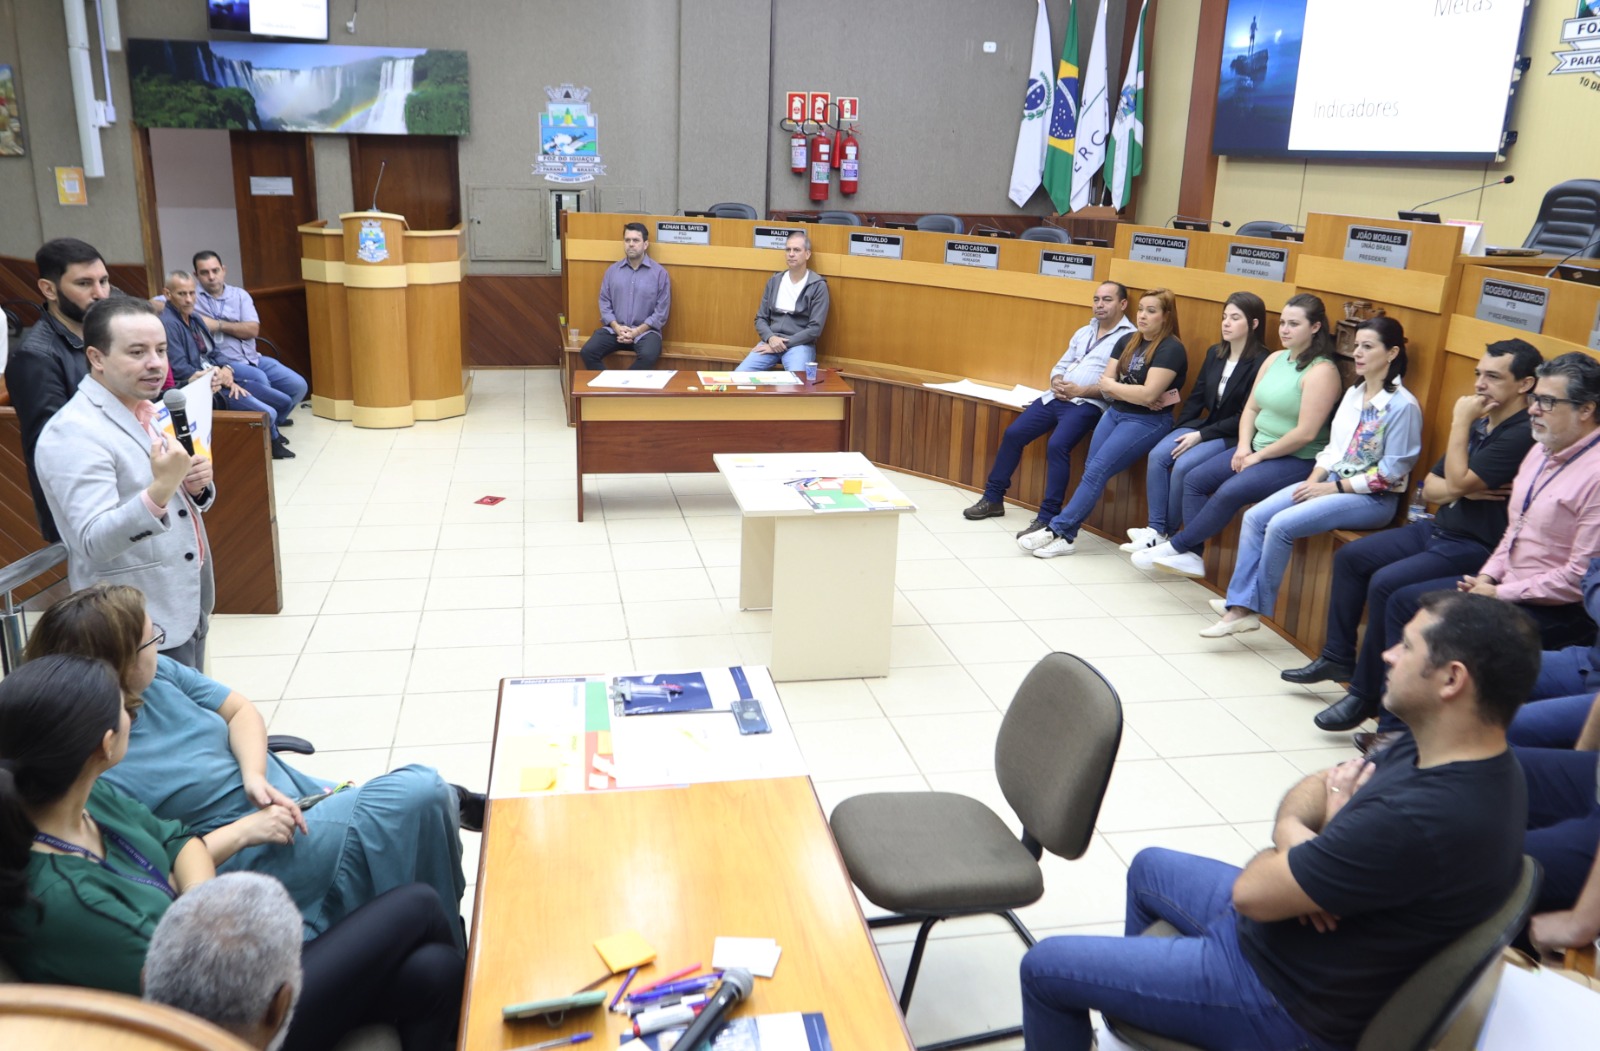 Técnicos de câmaras municipais trocam experiências para aprimoramento do processo legislativo   